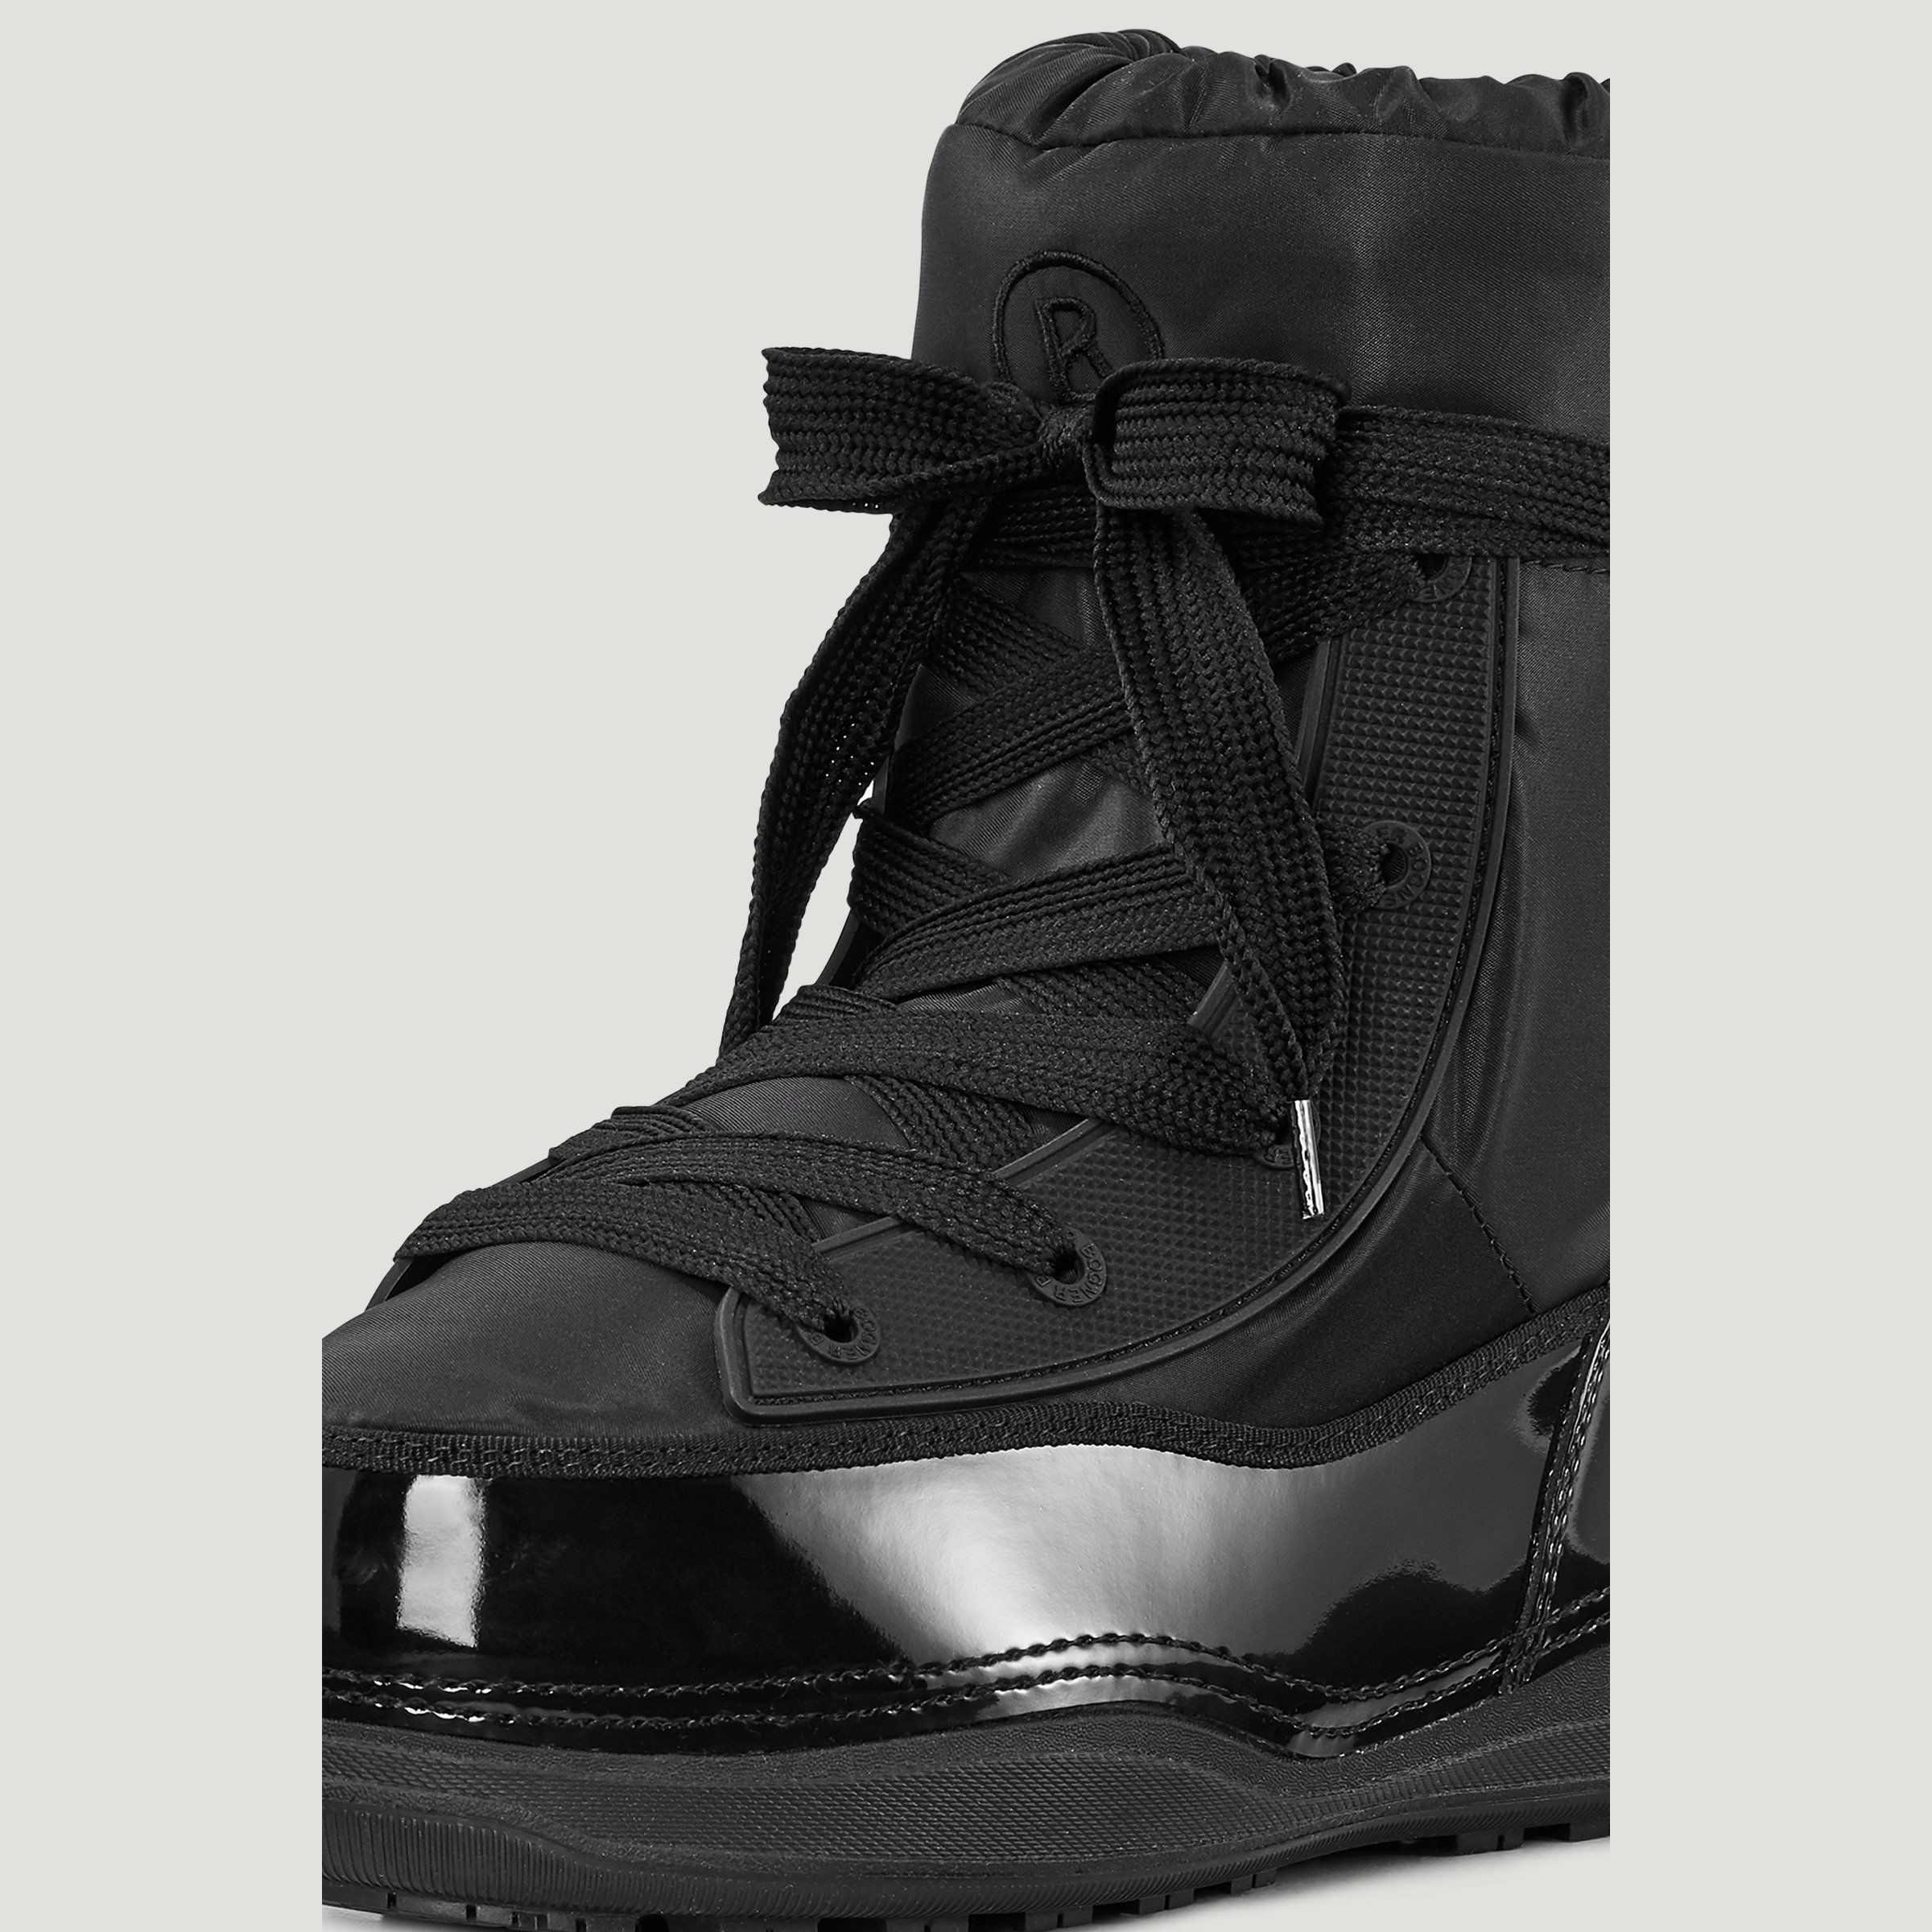 Winter Shoes -  bogner La Plagne 1A Snow boots